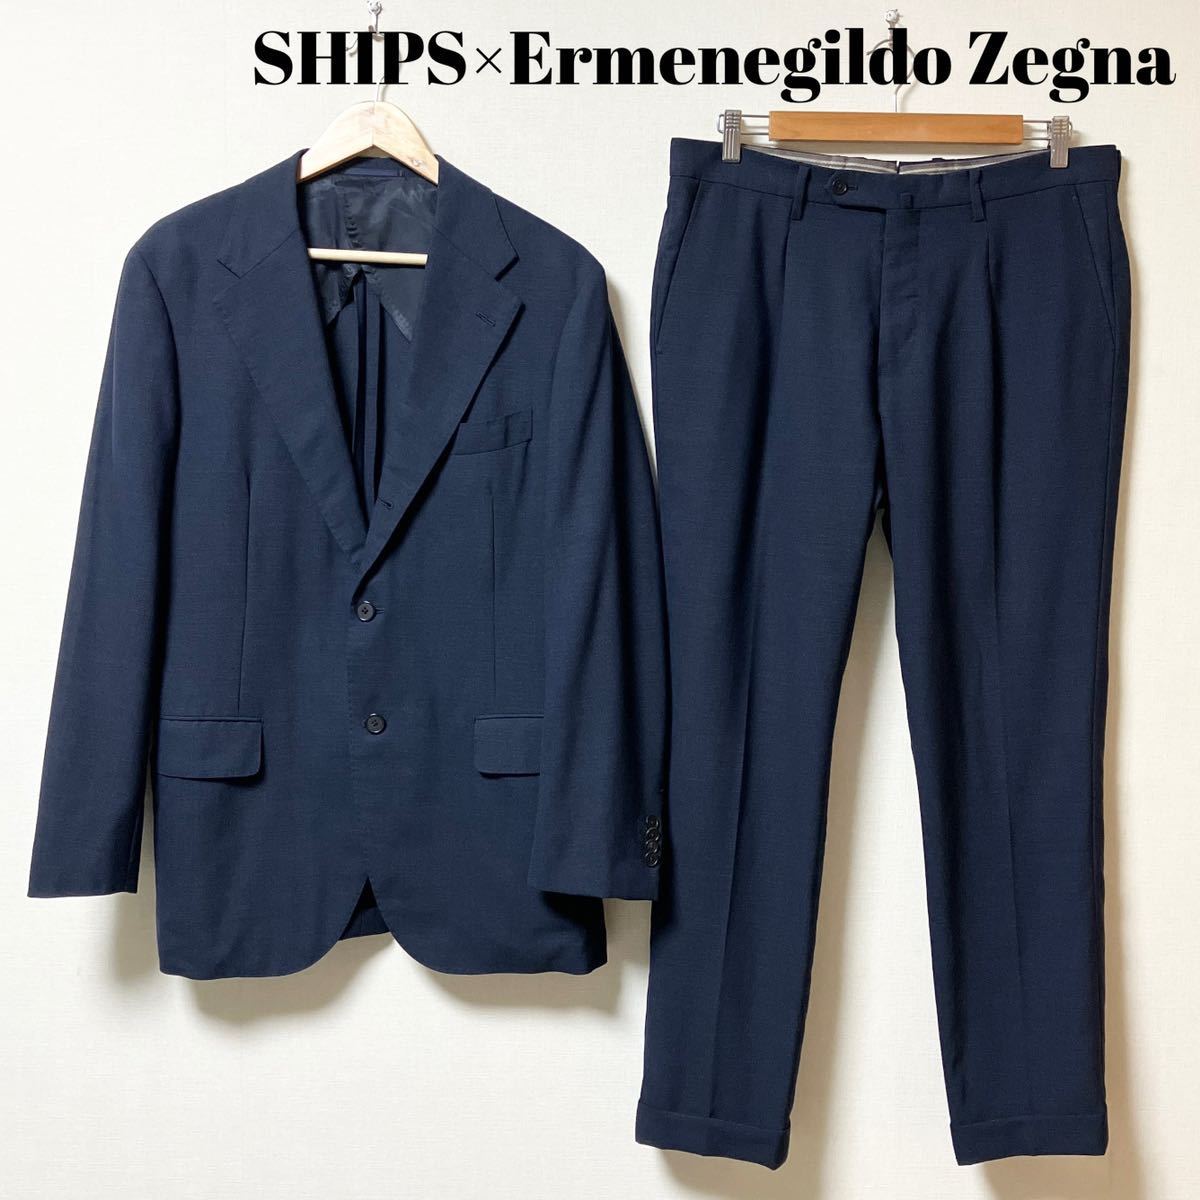 定番  SHIPS 大きいサイズ 52 モヘア ウール 紺 ネイビー セットアップスーツ エルメネジルドゼニア Zegna Ermenegildo シップス× XLサイズ以上